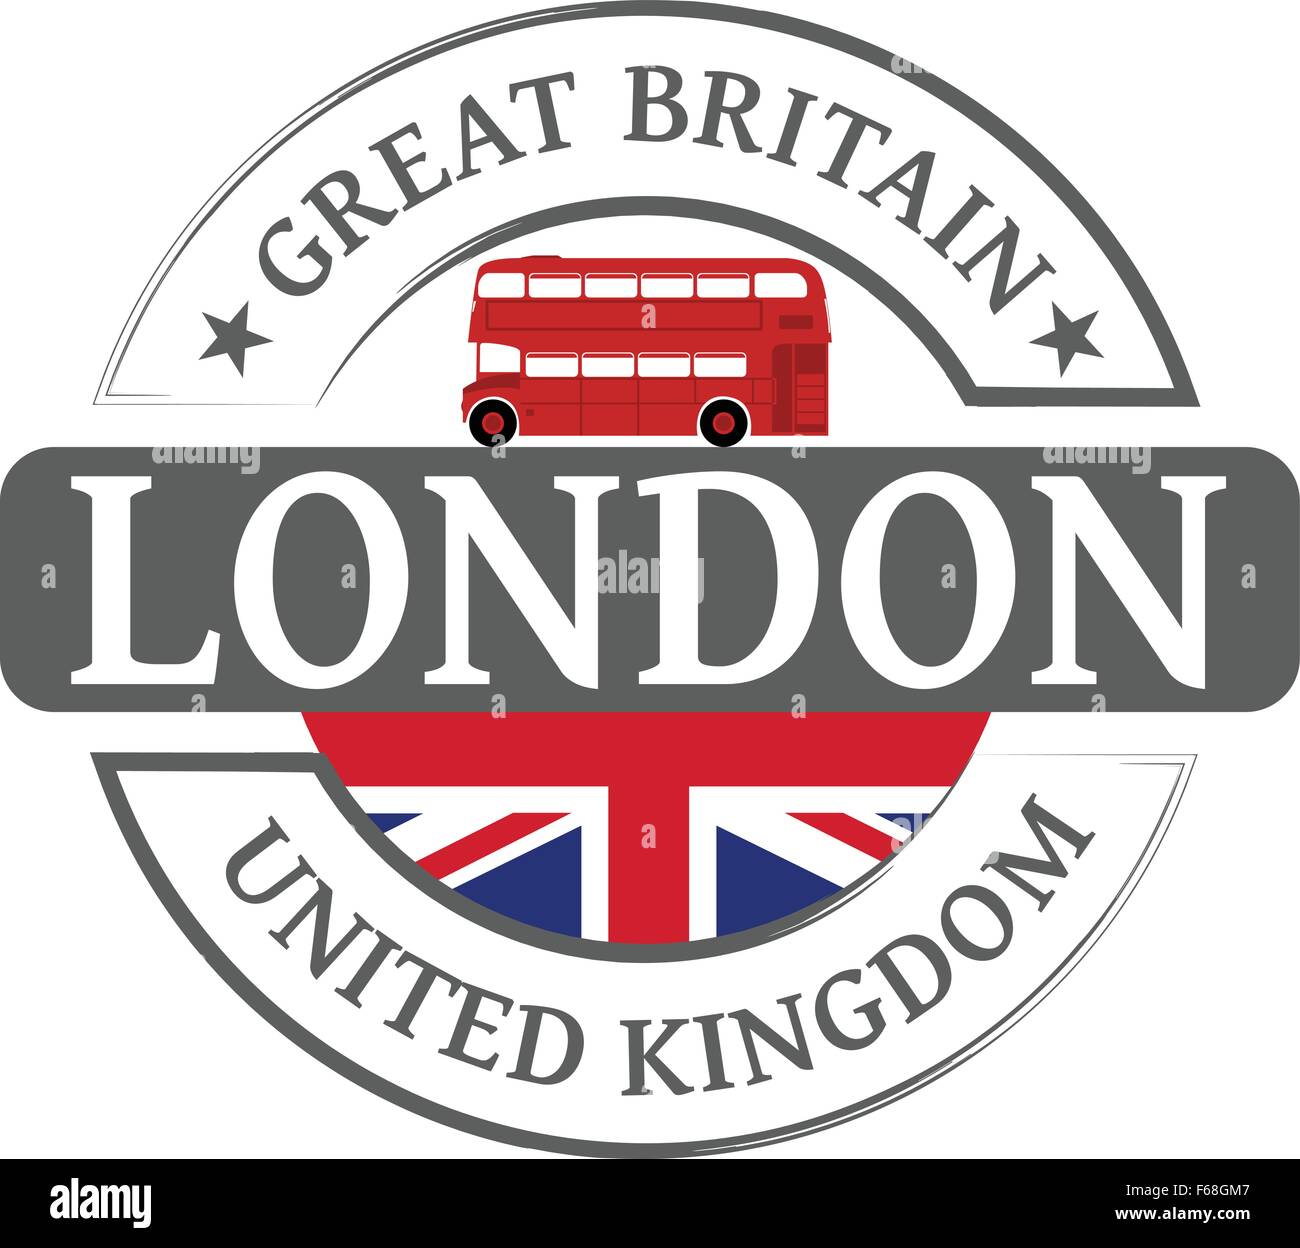 Tag Londres et bus à impériale rouge Illustration de Vecteur